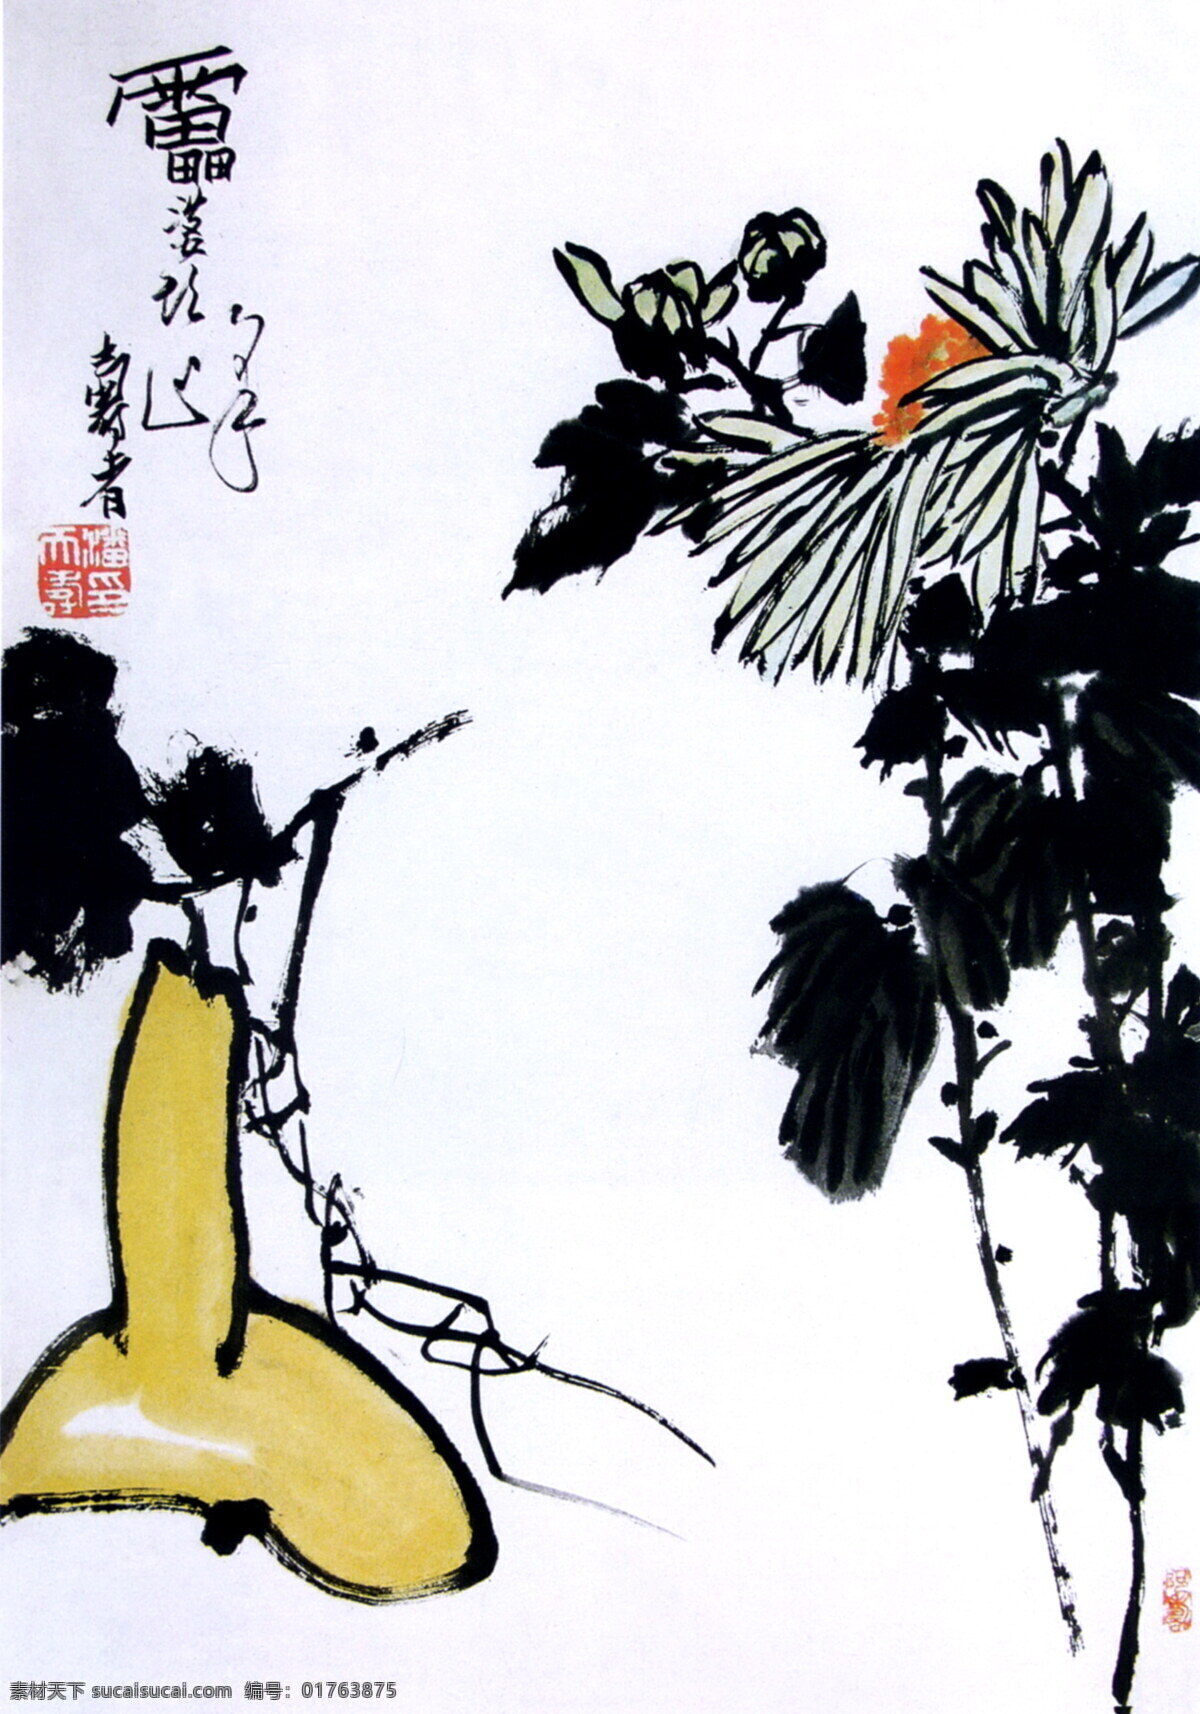 葫芦菊花 潘天寿国画 传统画 名画 古画 水墨画 设计素材 花鸟画篇 中国画篇 书画美术 白色